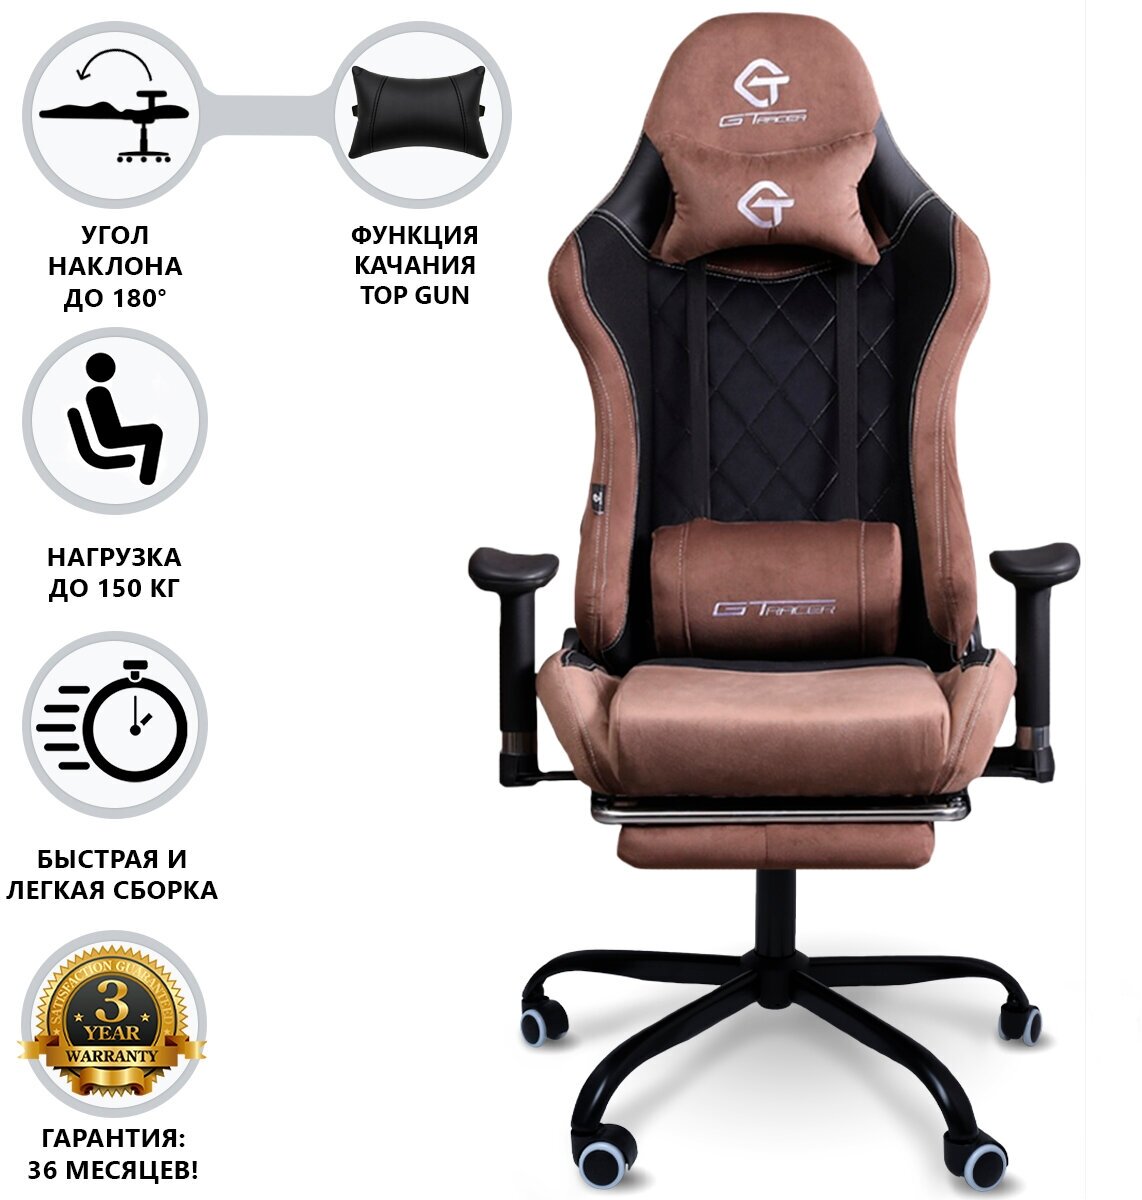 Кресло компьютерное, компьютерное кресло, игровое кресло компьютерное, кресло для дома и офиса, геймерское кресло, цвет черно-коричневый